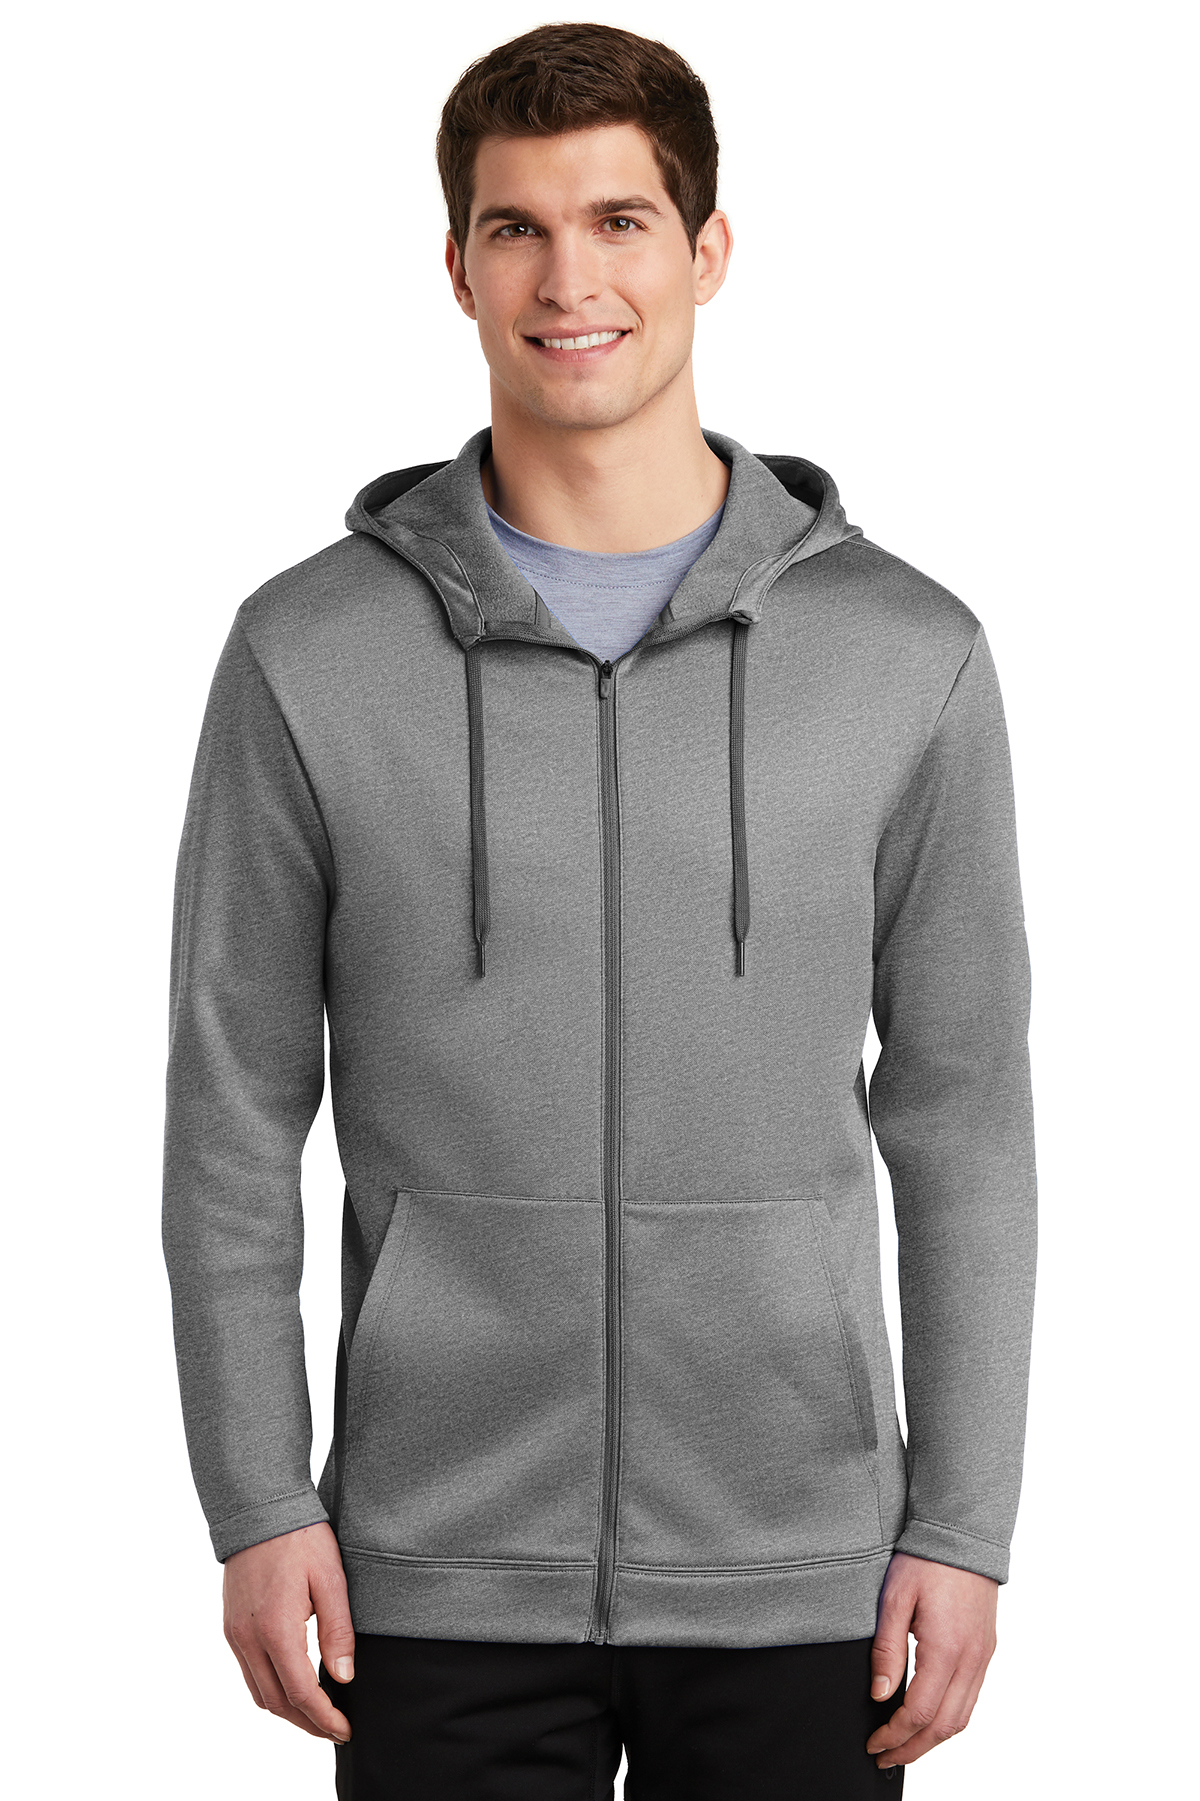 Nike Therma-FIT Full-Zip Fleece Hoodie | Product | SanMar